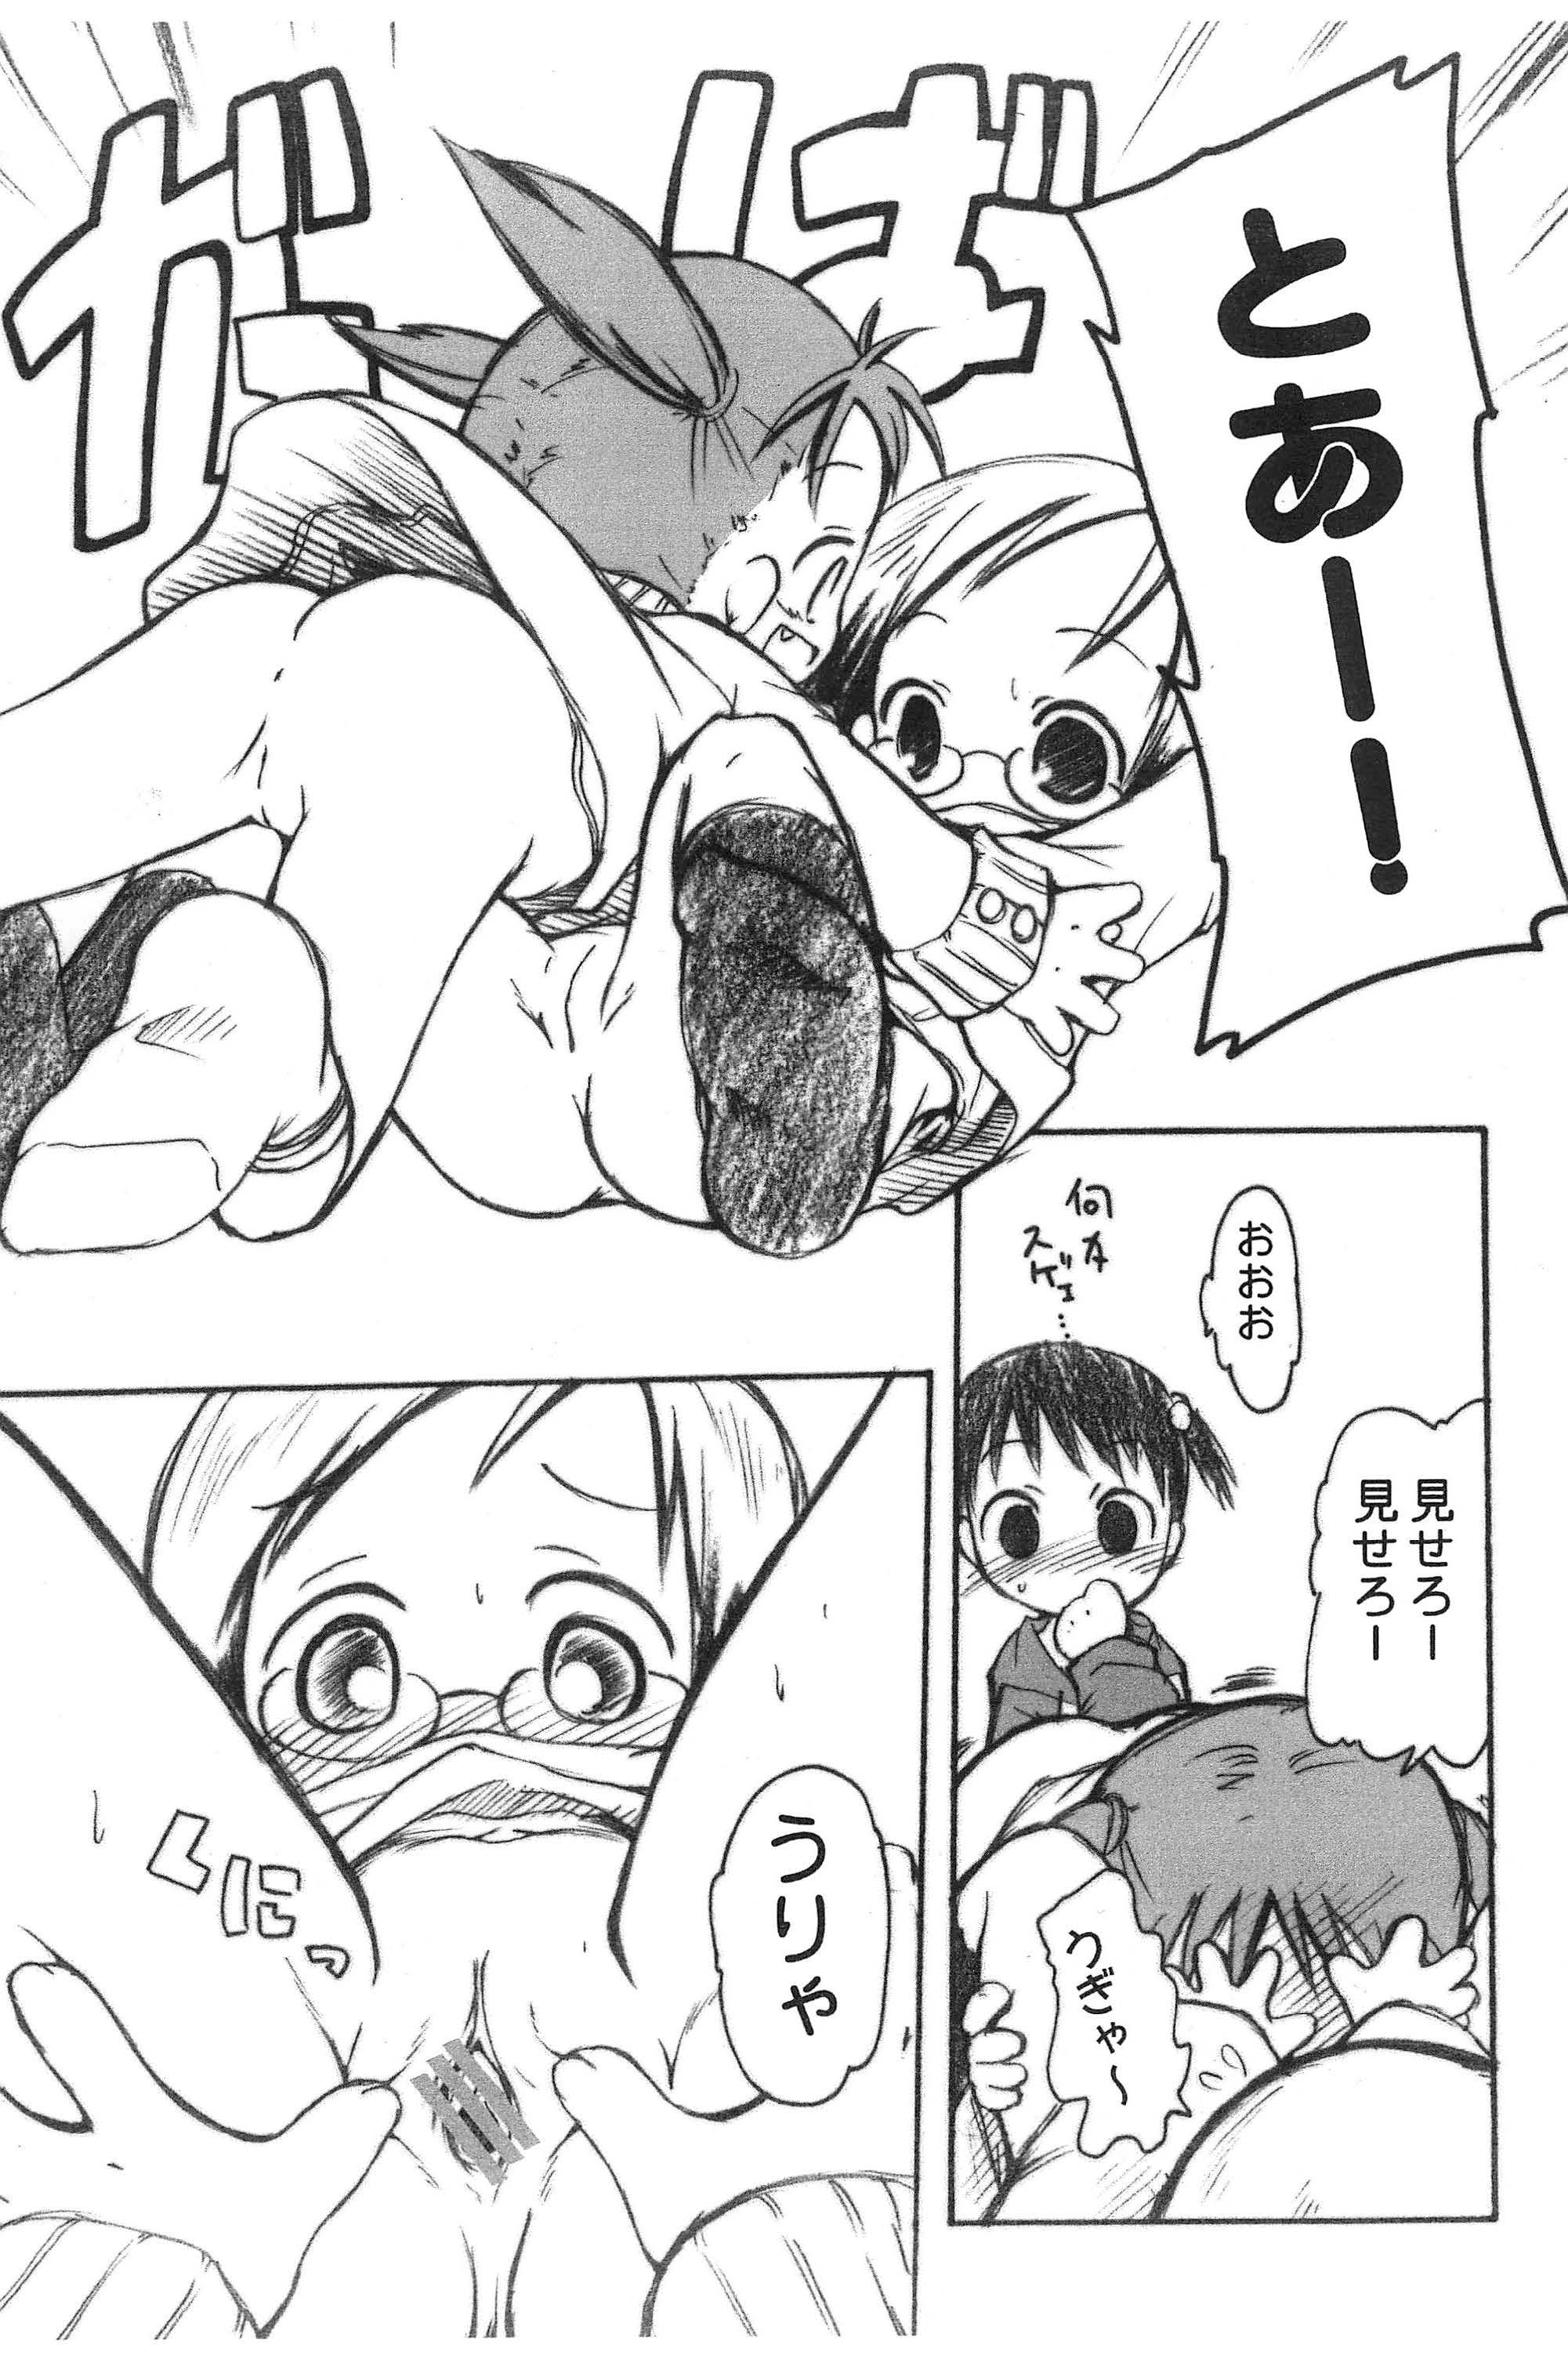 Small Boobs Ichigo Man - Ichigo mashimaro Gay Natural - Page 10